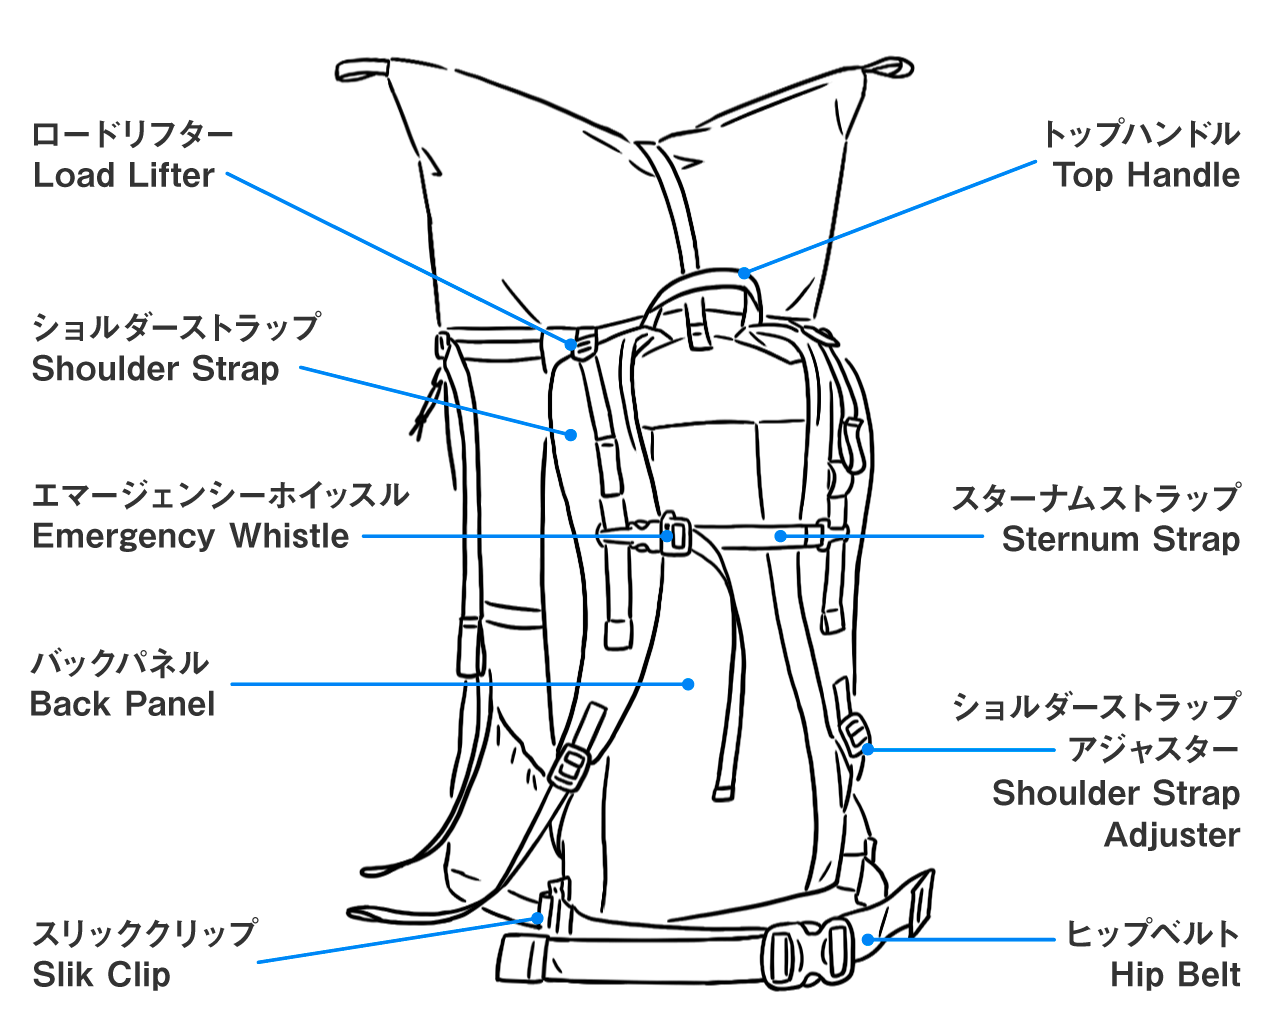 yamatomichi Backpack Three